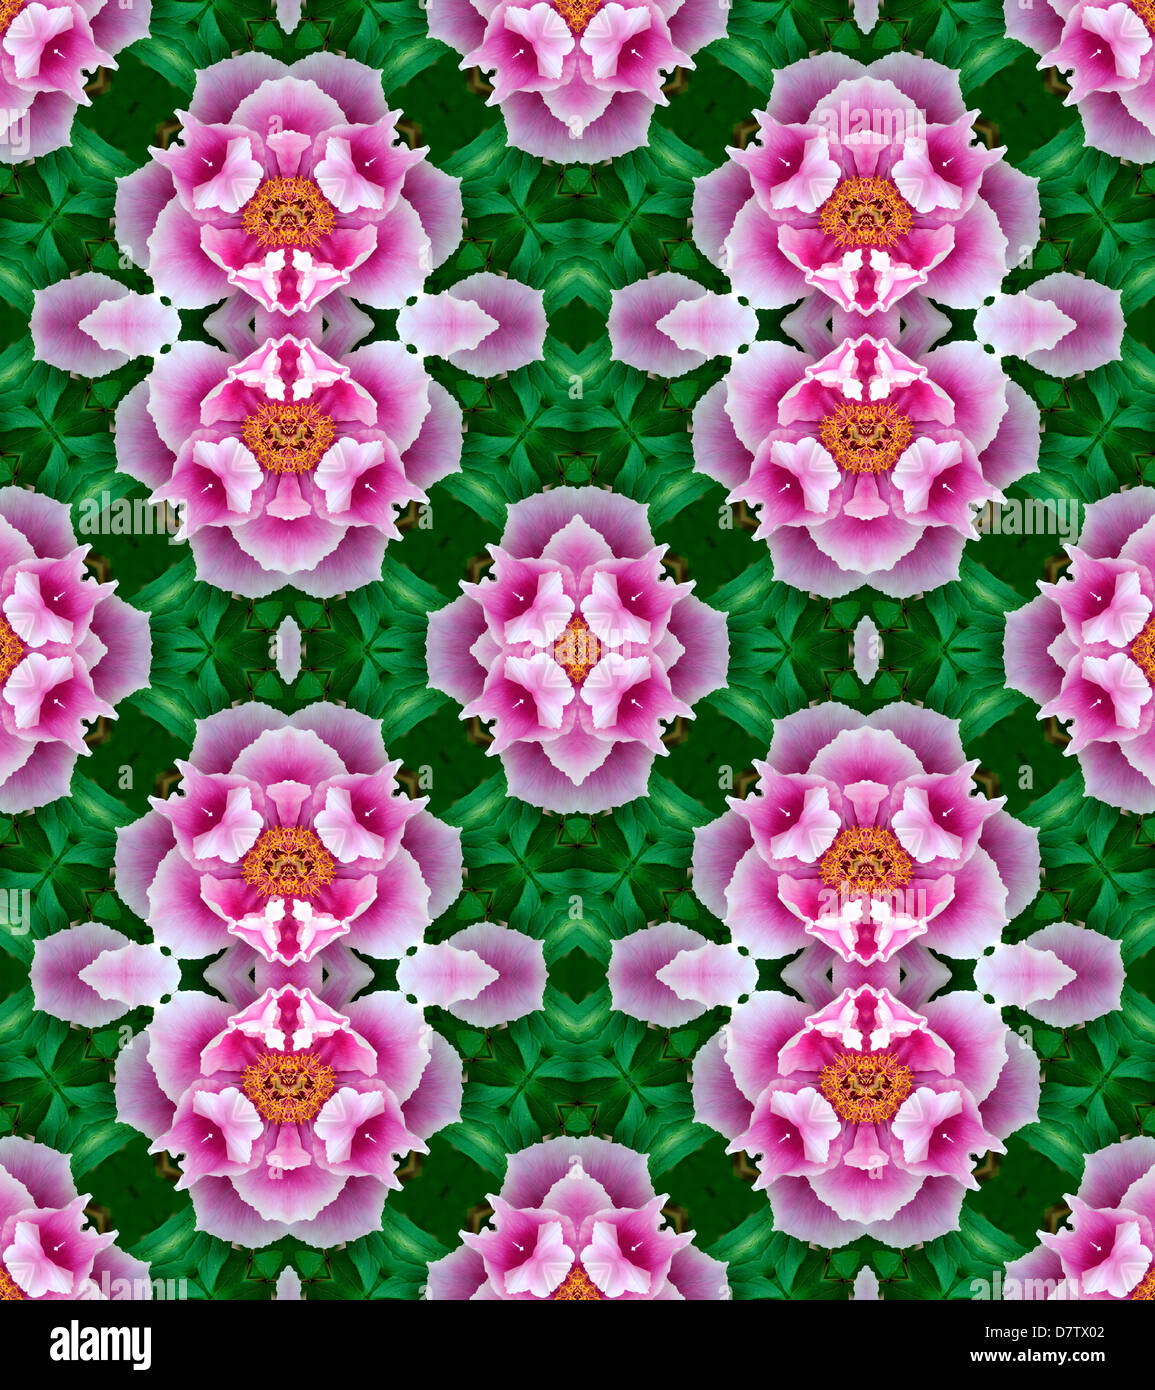 Motif répété à partir de l'image de fleur de pivoine Rose Banque D'Images